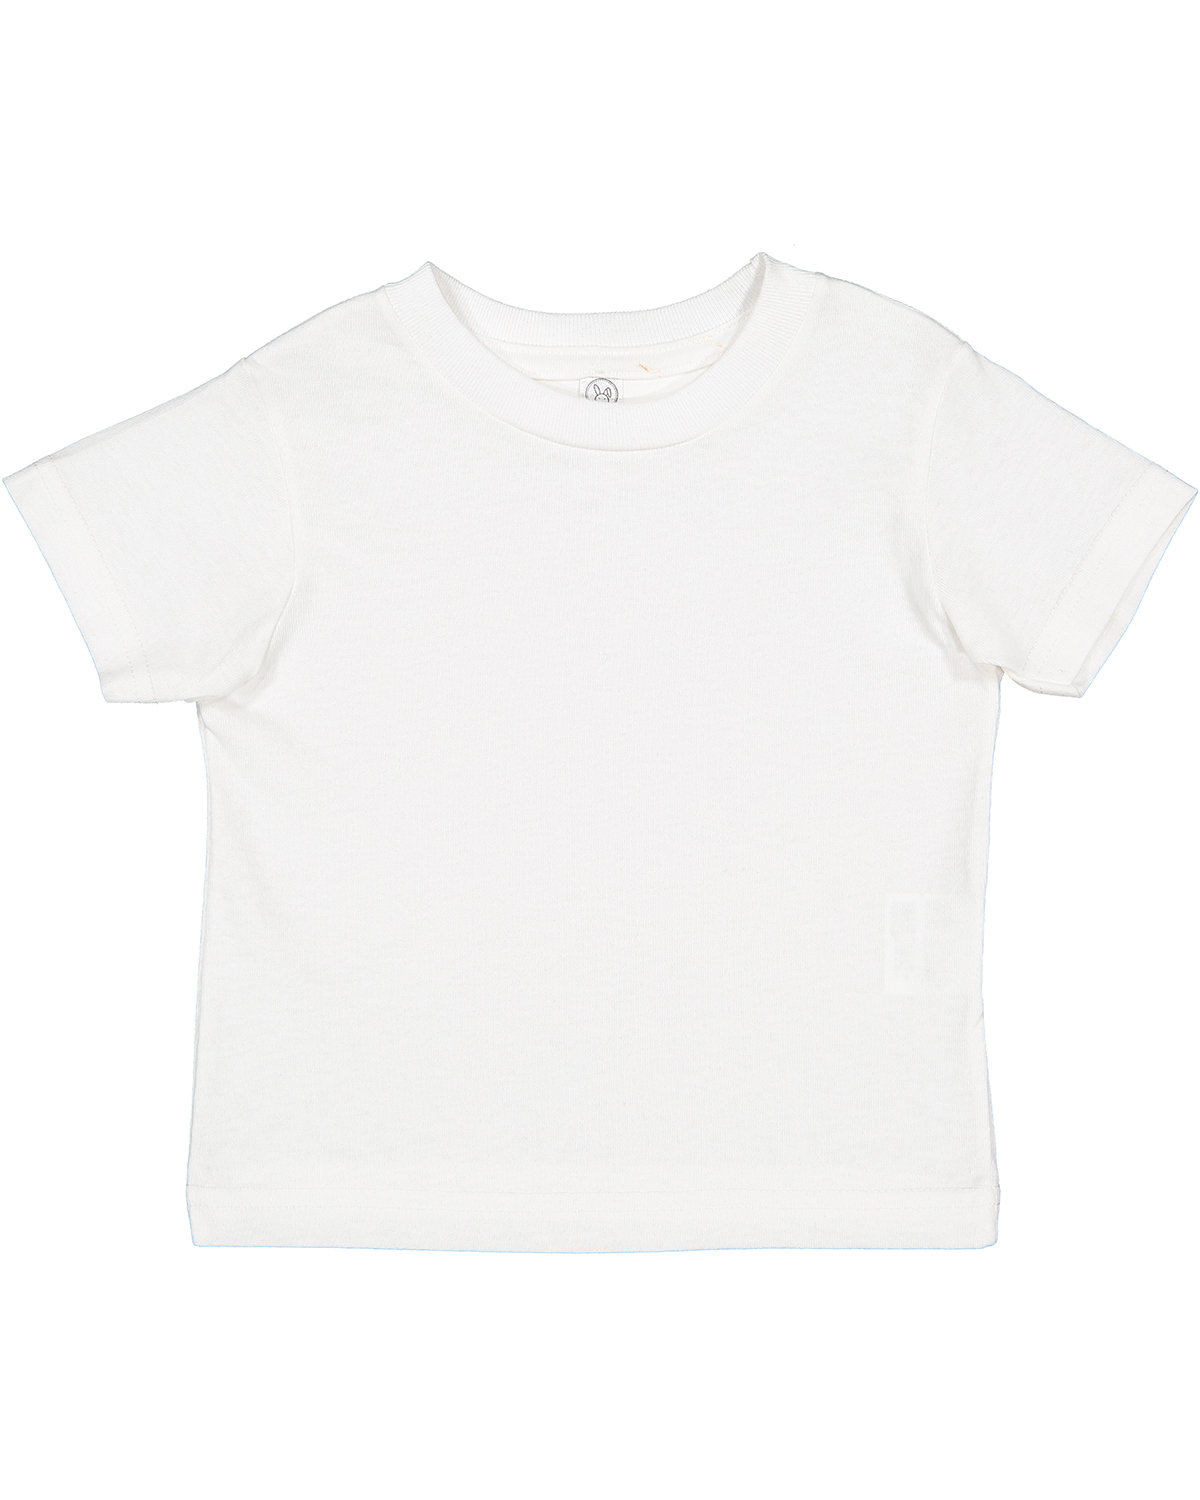 Rabbit Skins Toddler Cotton Jersey T-Shirt WHITE 